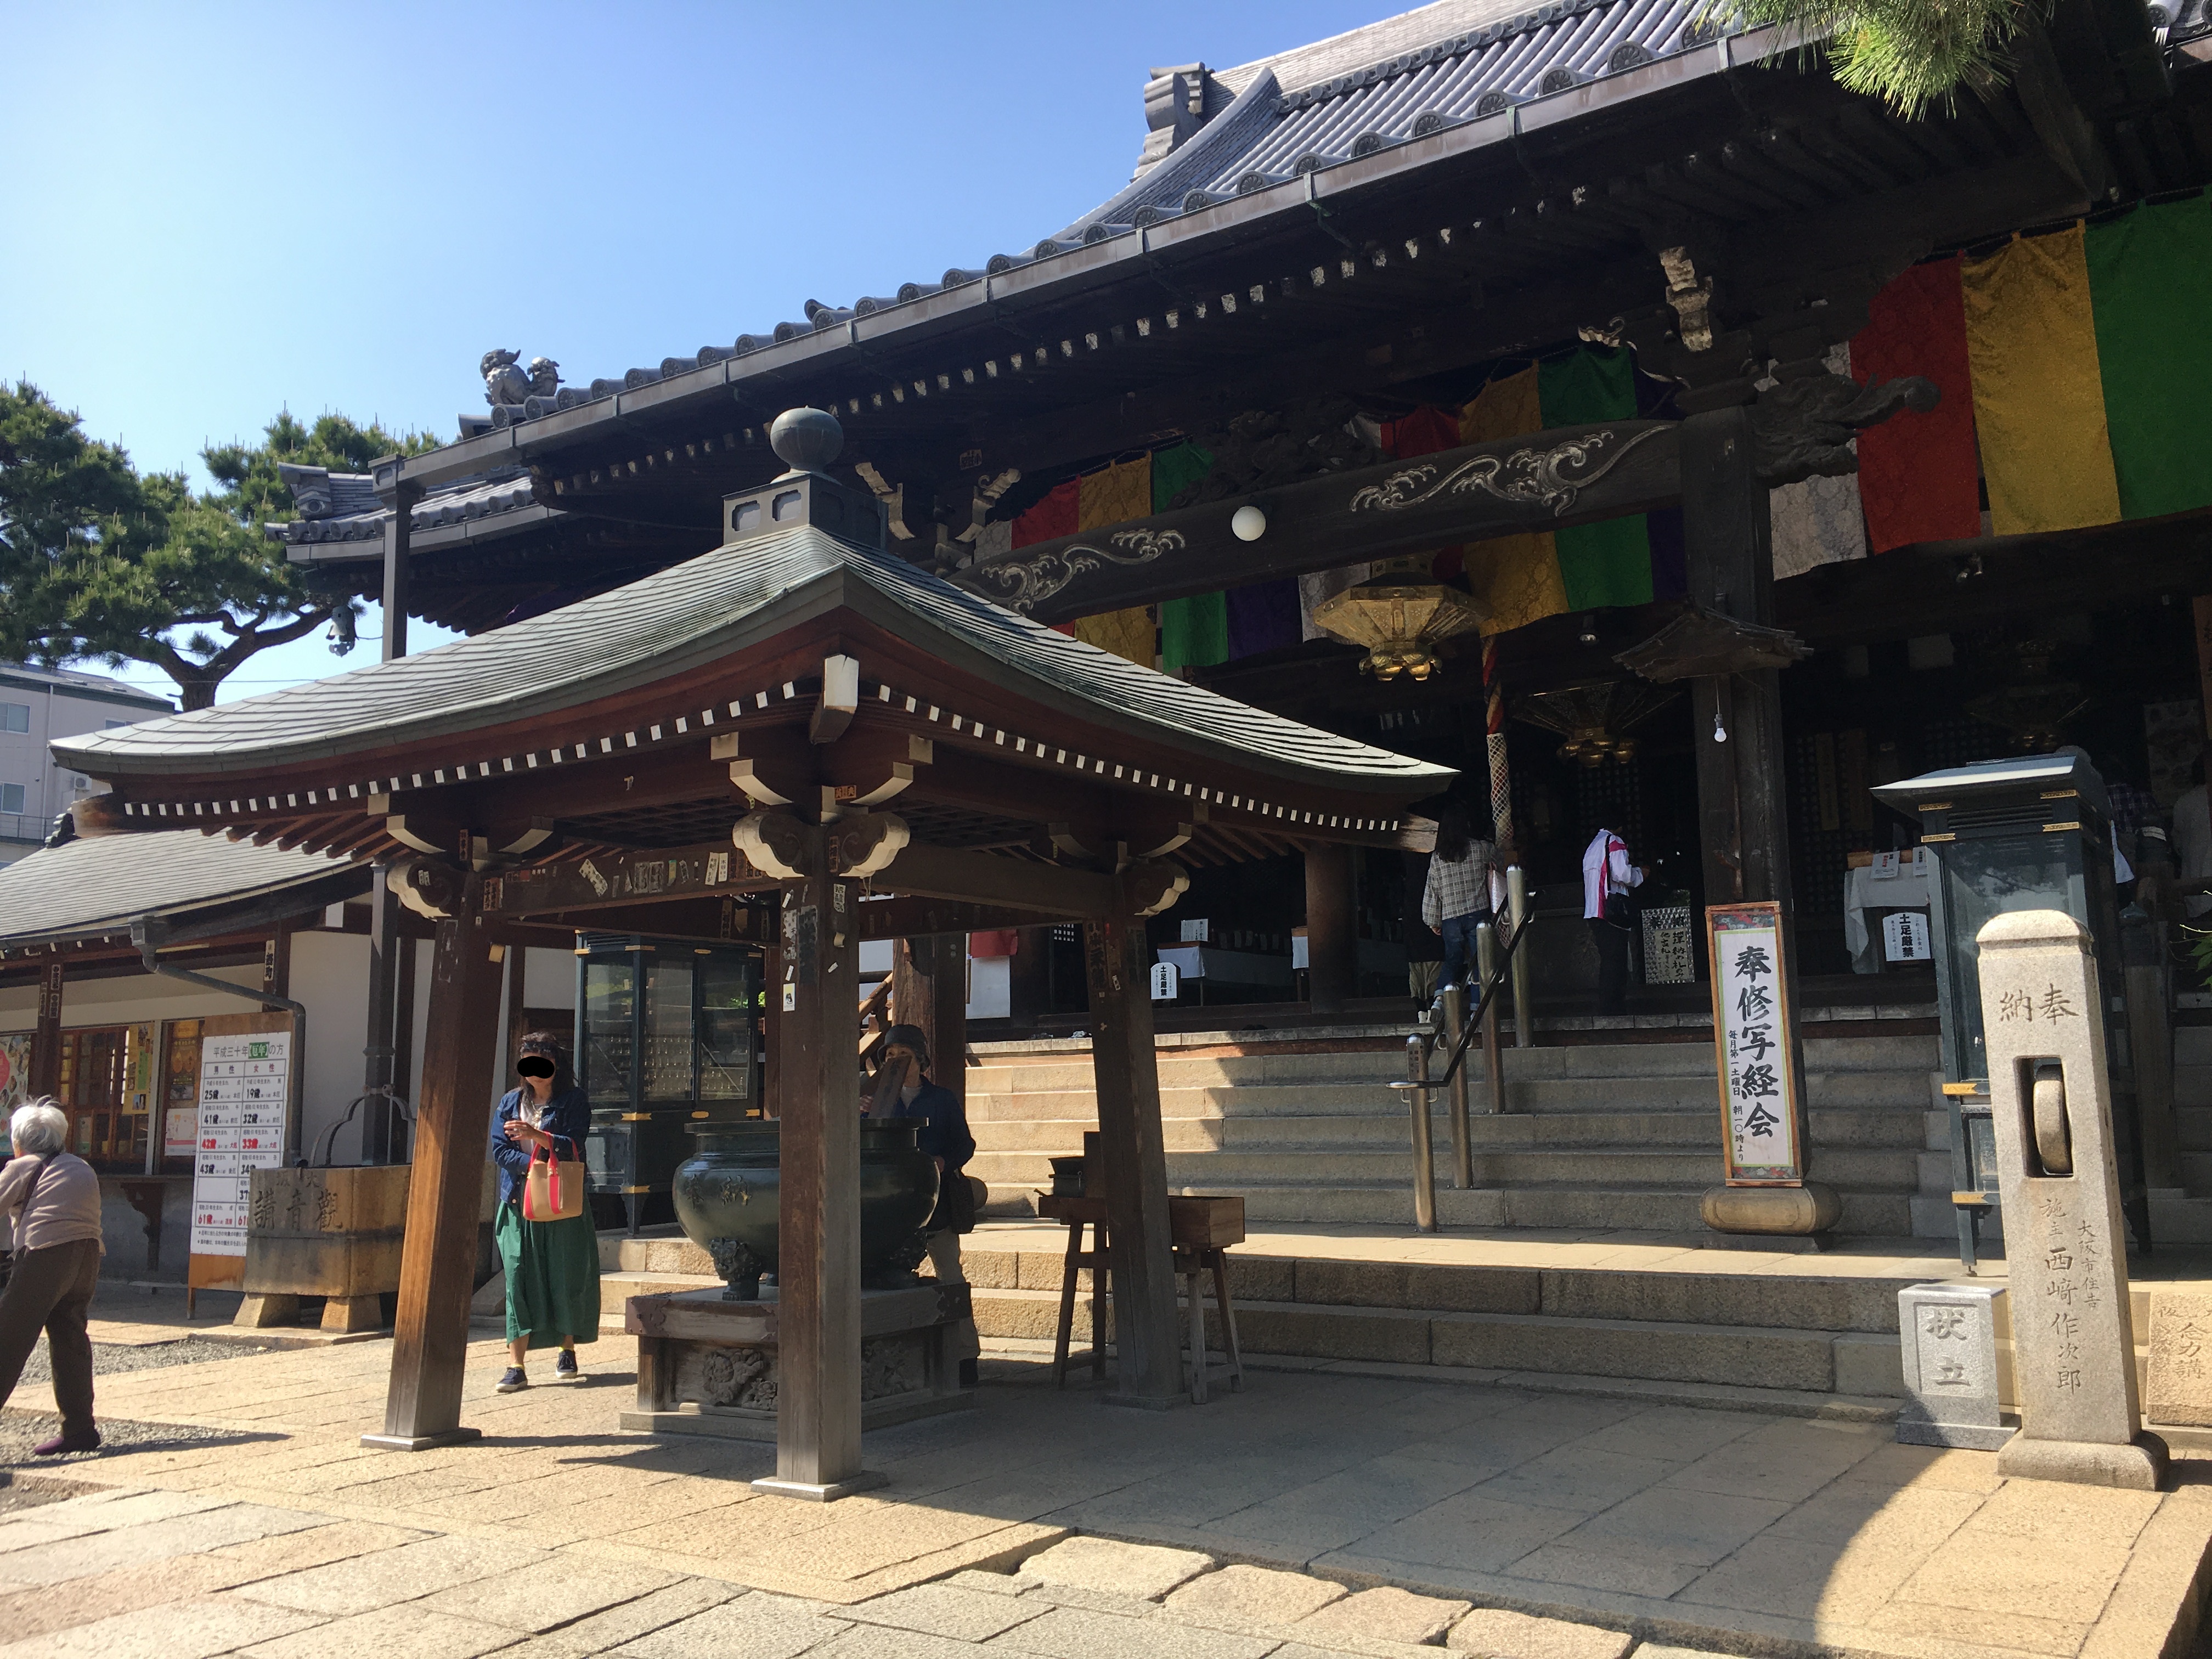 hondo of Fujii dera temple of Osaka